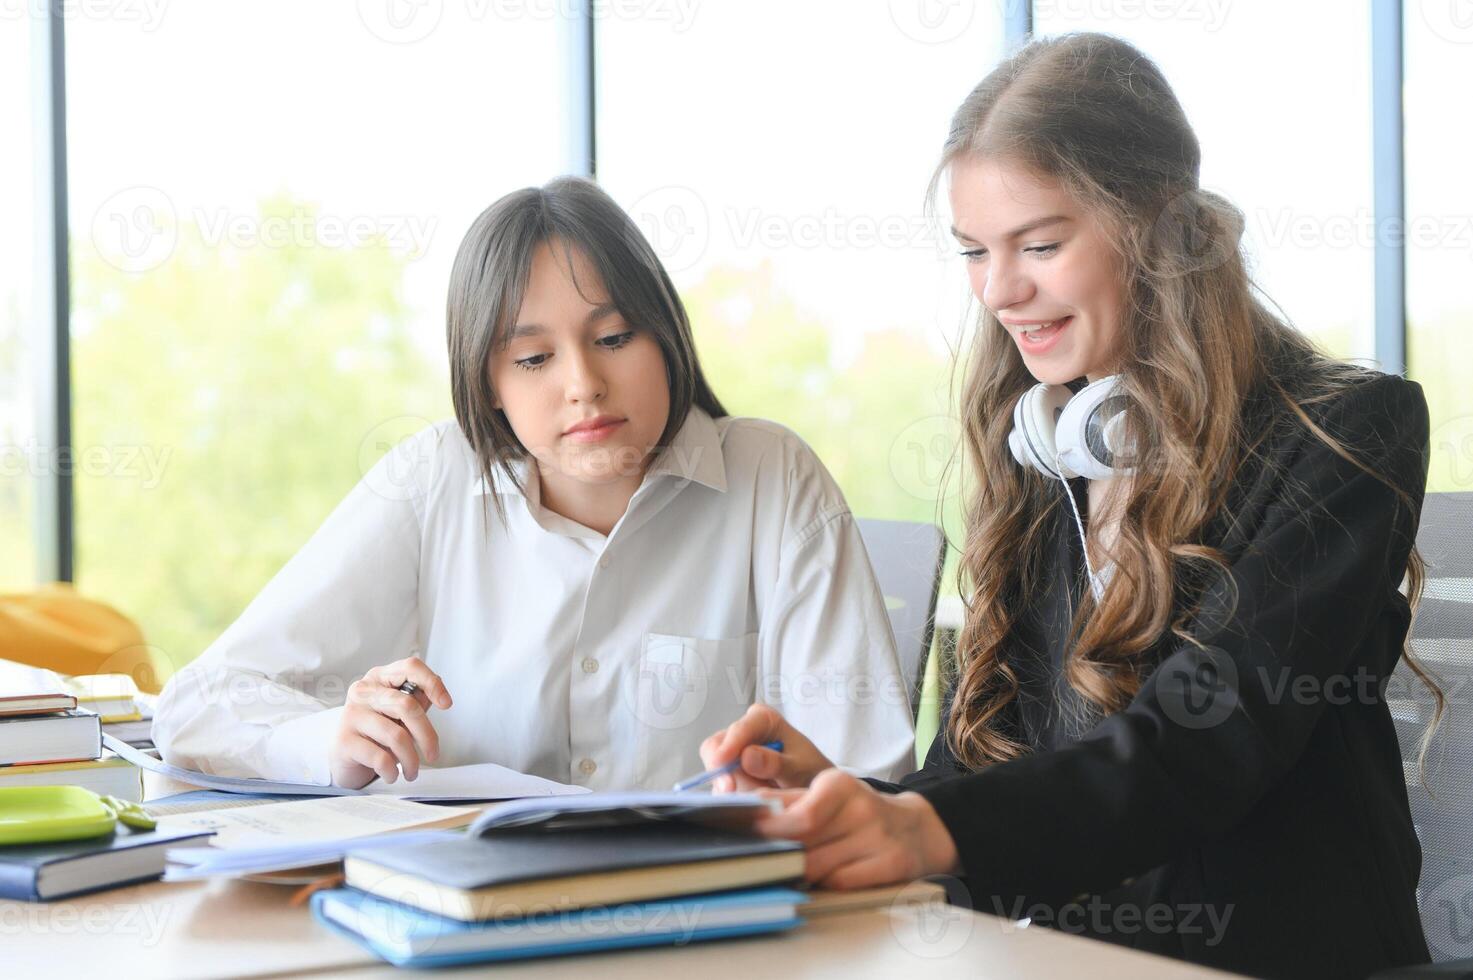 porträtt av två flickor på arbetsplats med böcker. skola utbildning foto